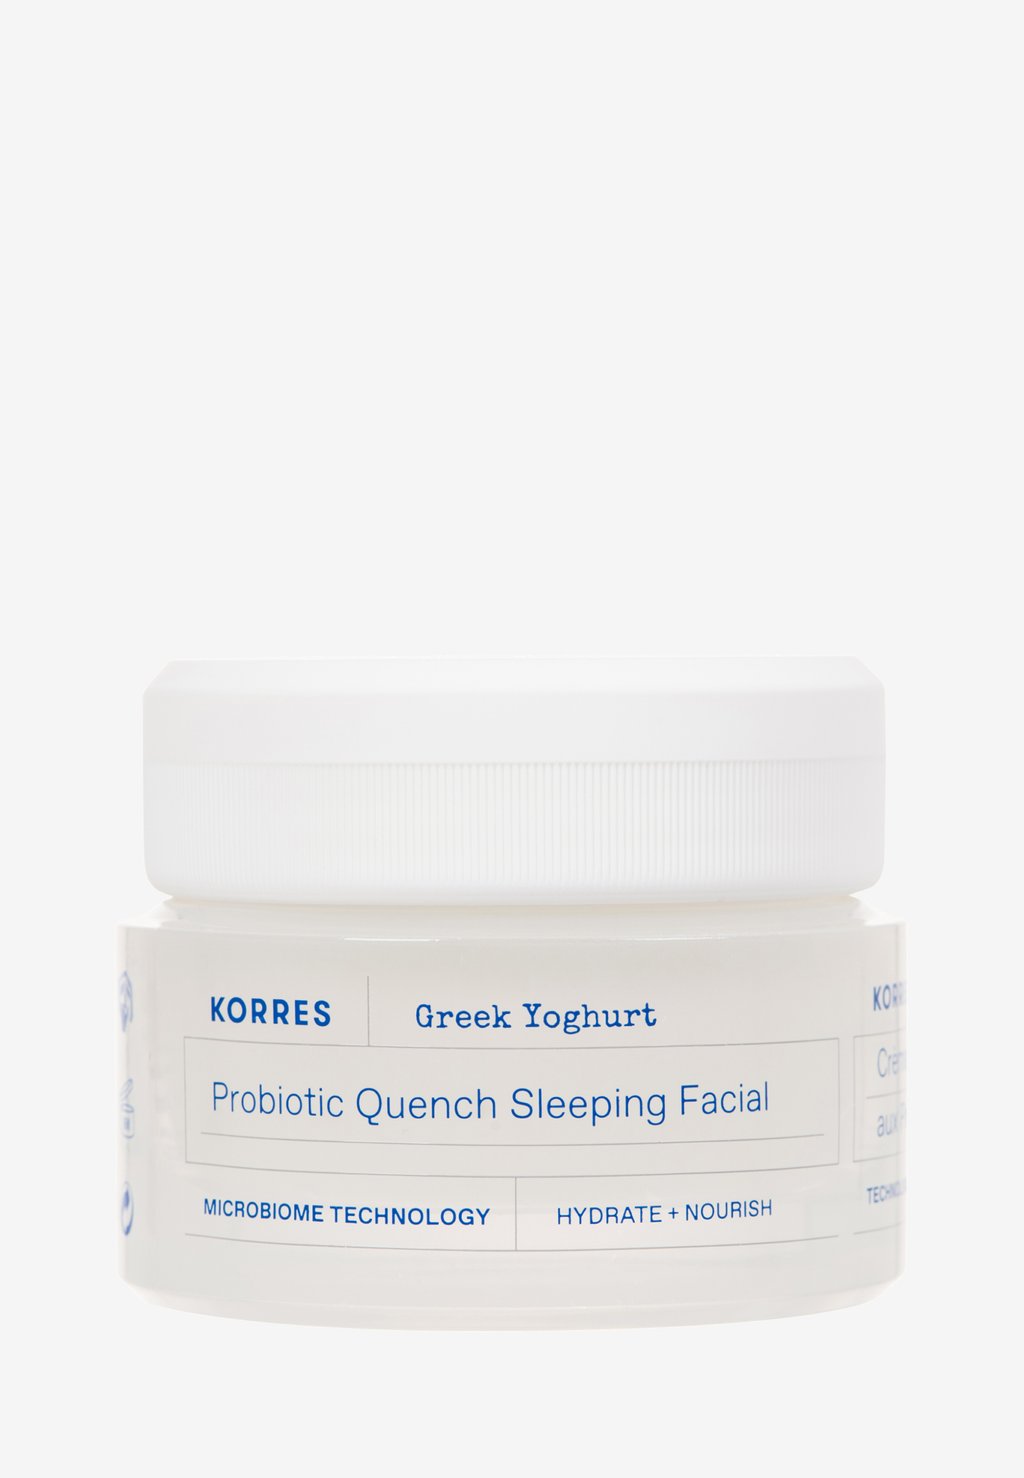 Ночные процедуры Greek Yoghurt Probiotic Quench Sleeping Facial KORRES ночной крем для лица korres greek yoghurt probiotic quench sleeping facial 40 мл